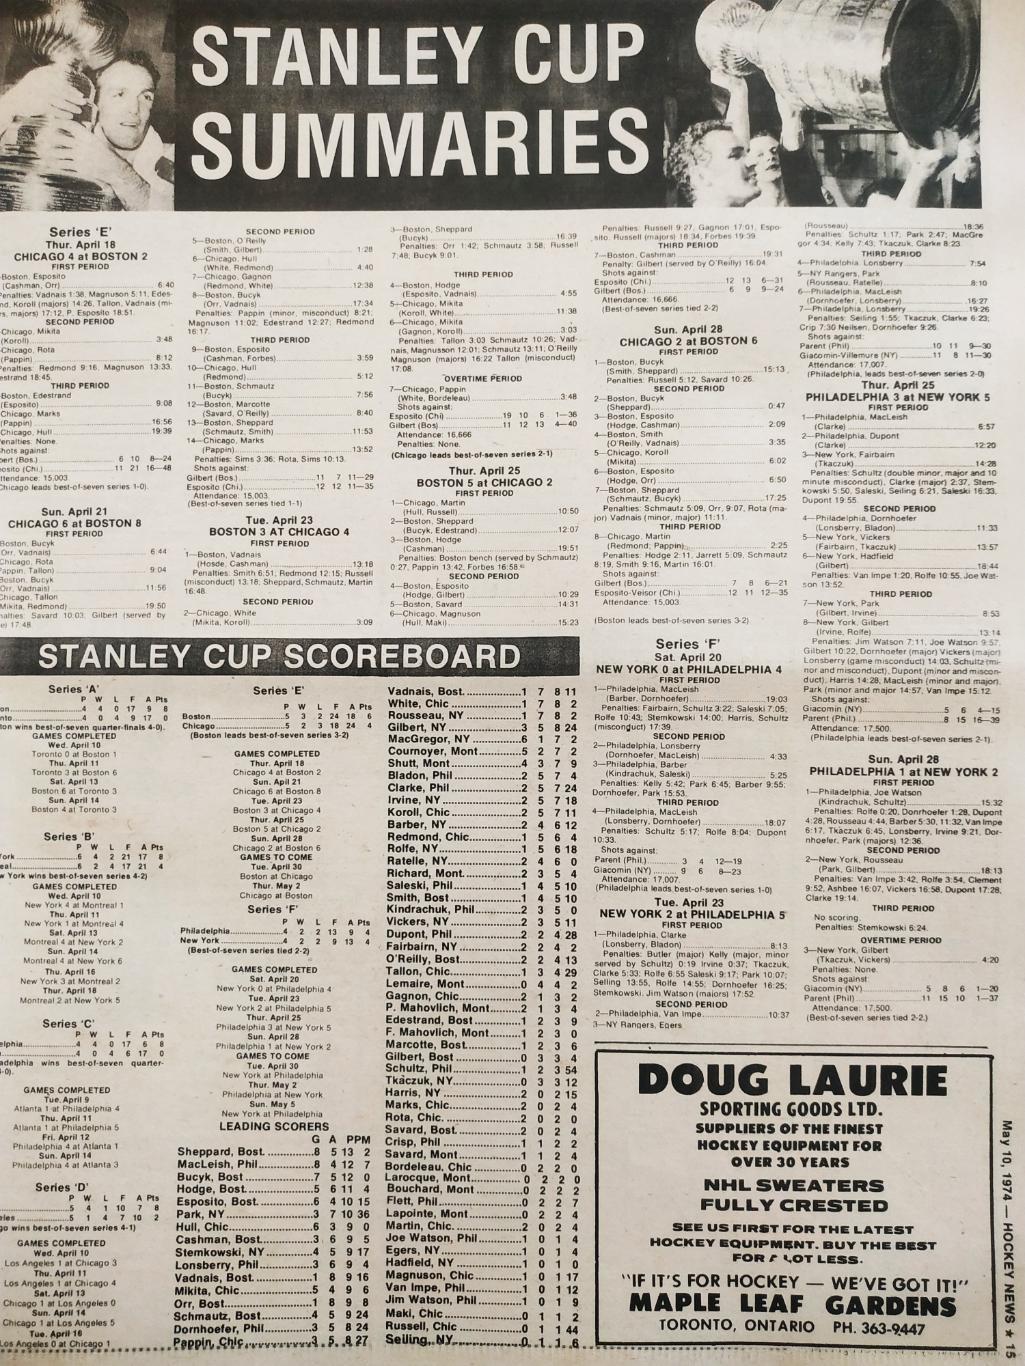 ХОККЕЙ ЖУРНАЛ ЕЖЕНЕДЕЛЬНИК НХЛ НОВОСТИ ХОККЕЯ MAY.10 1974 NHL THE HOCKEY NEWS 5